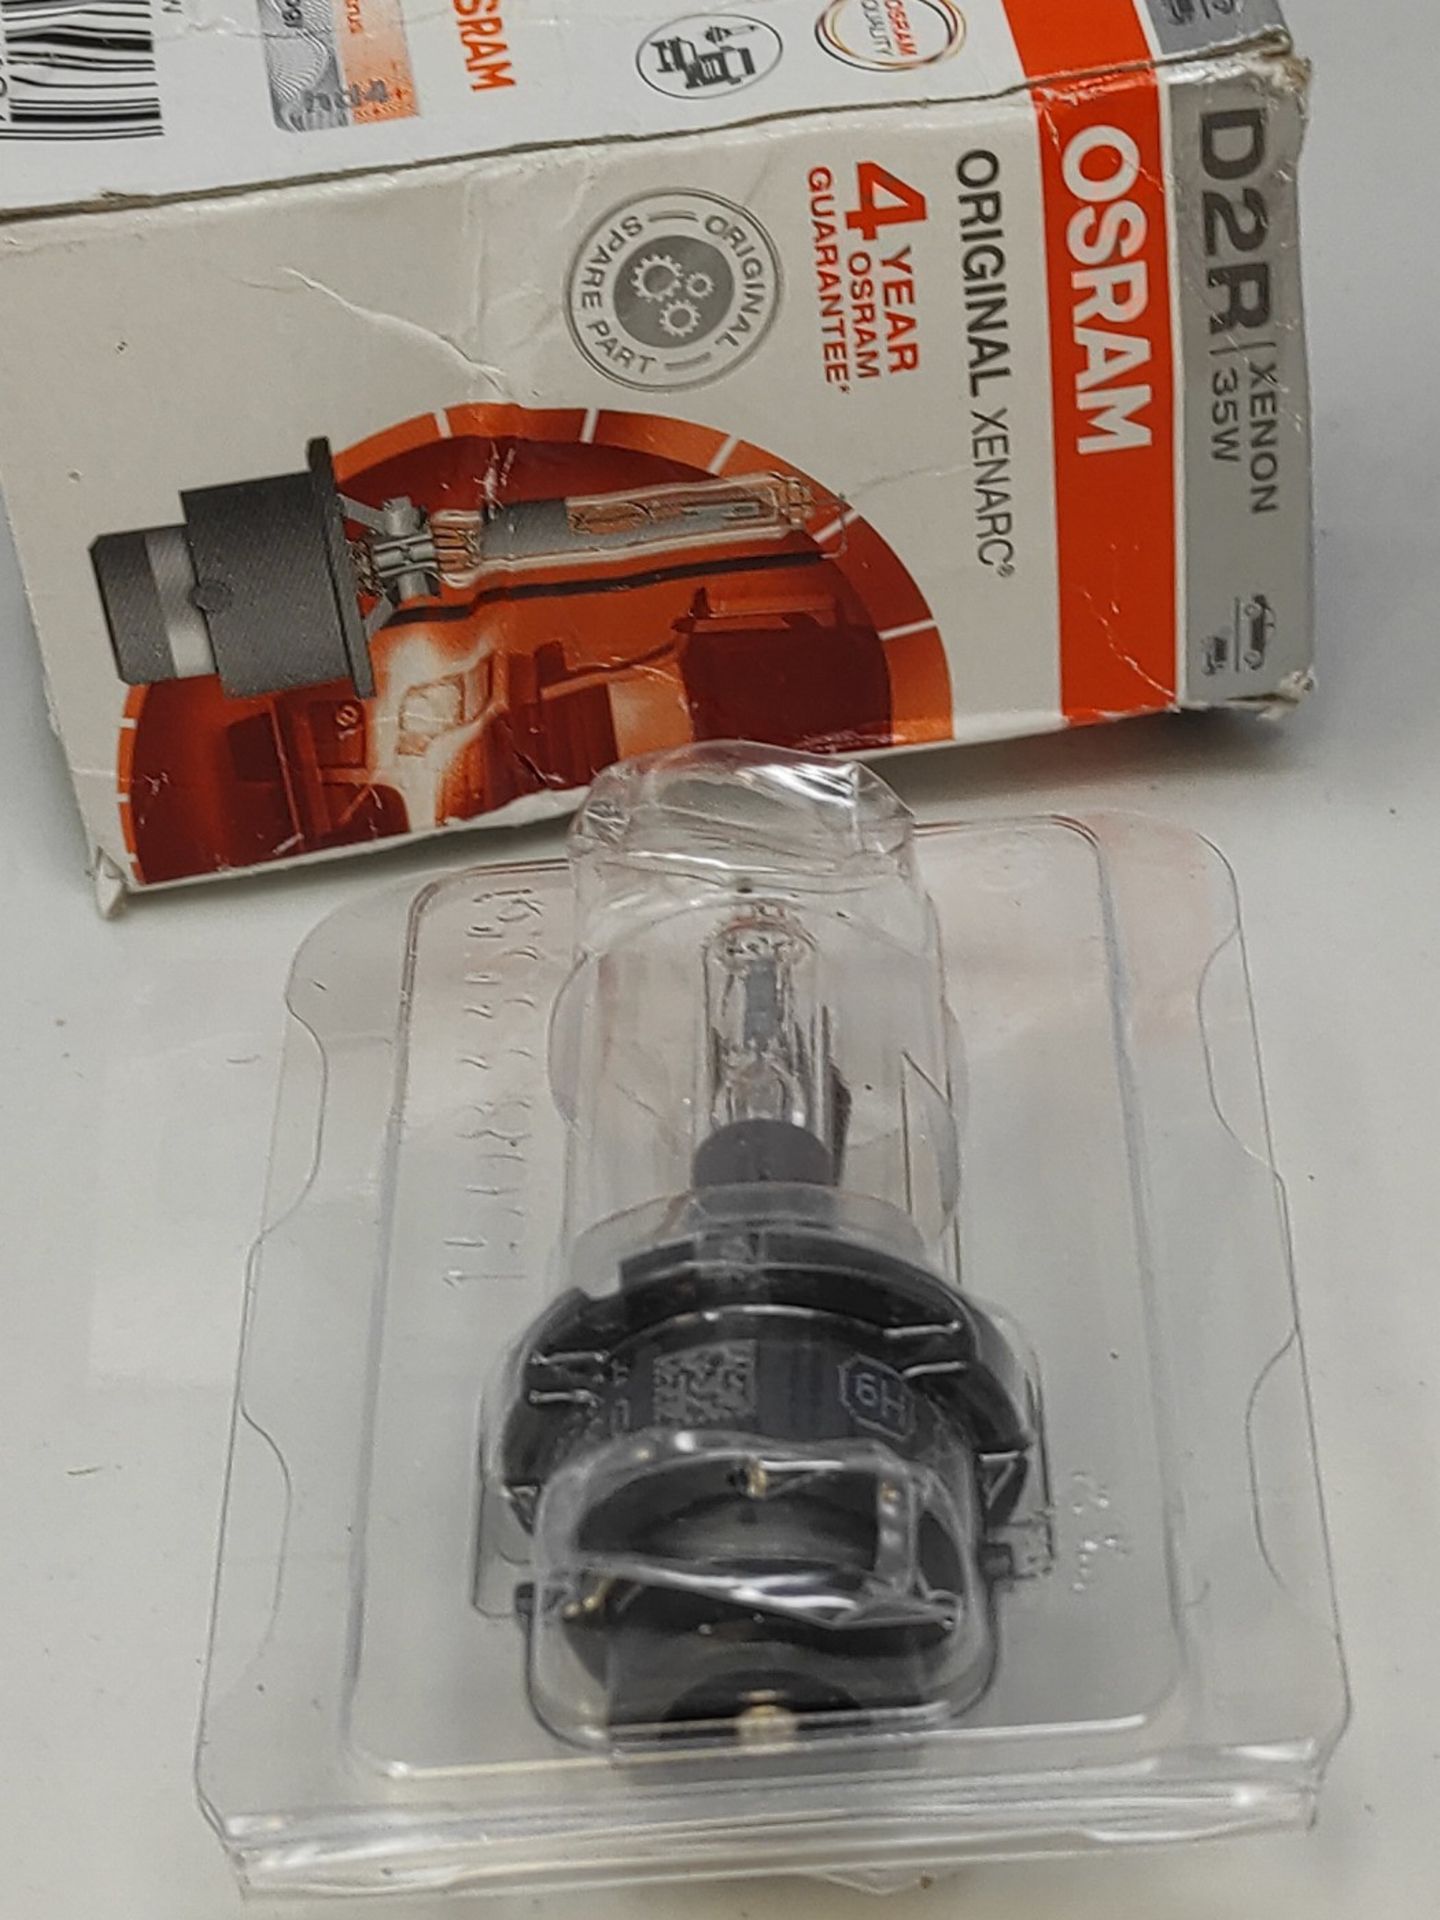 Osram 66250 XENARC D2R Xenon headlight bulbs for cars. - Image 2 of 2